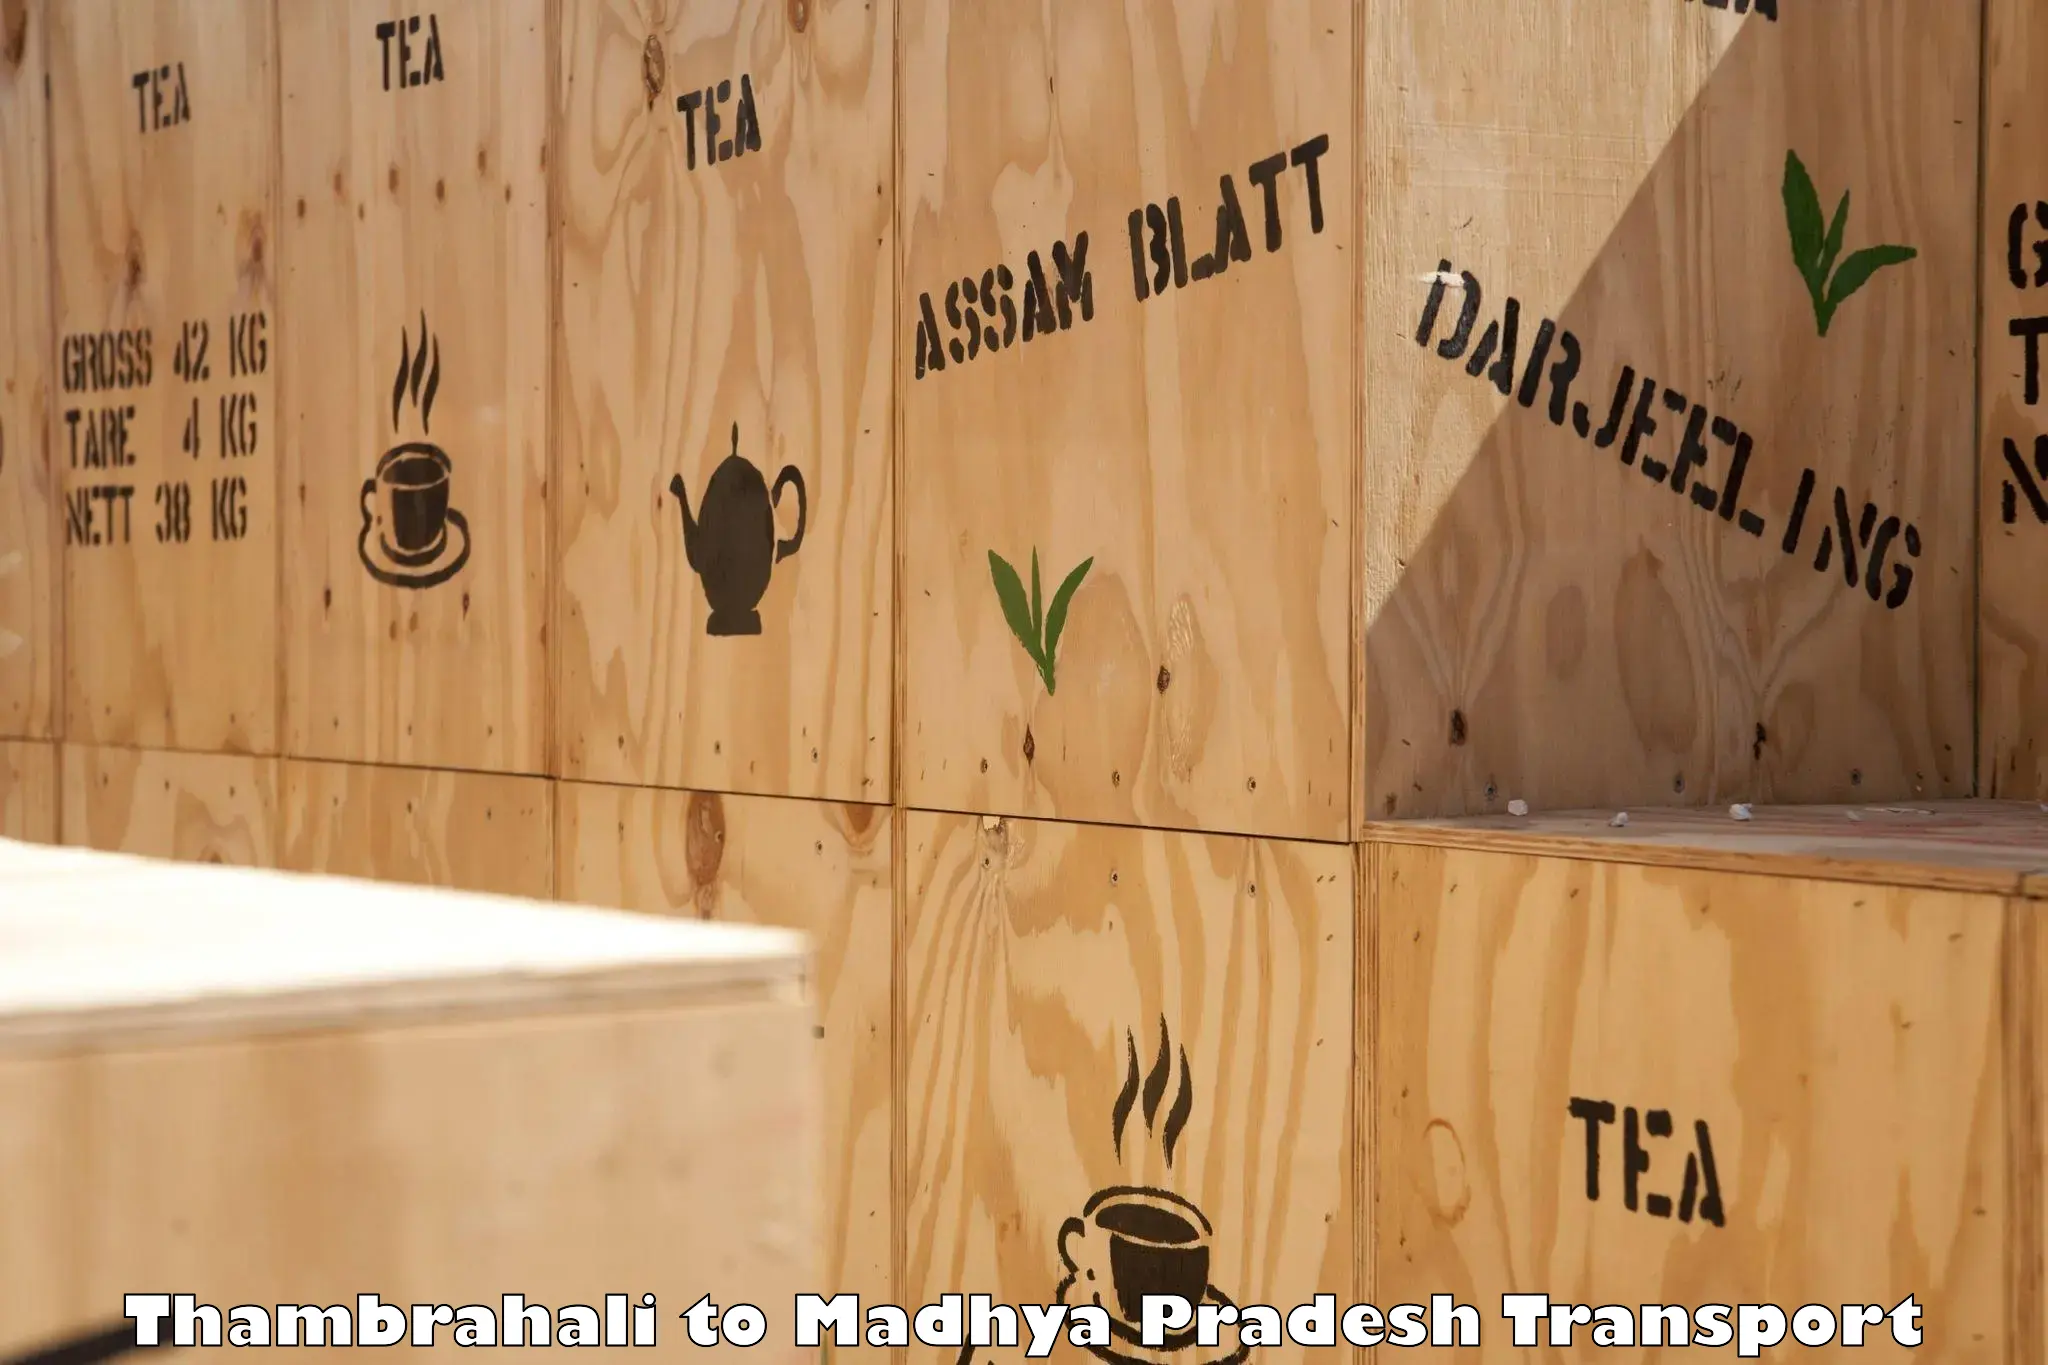 Furniture transport service Thambrahali to Amarwara